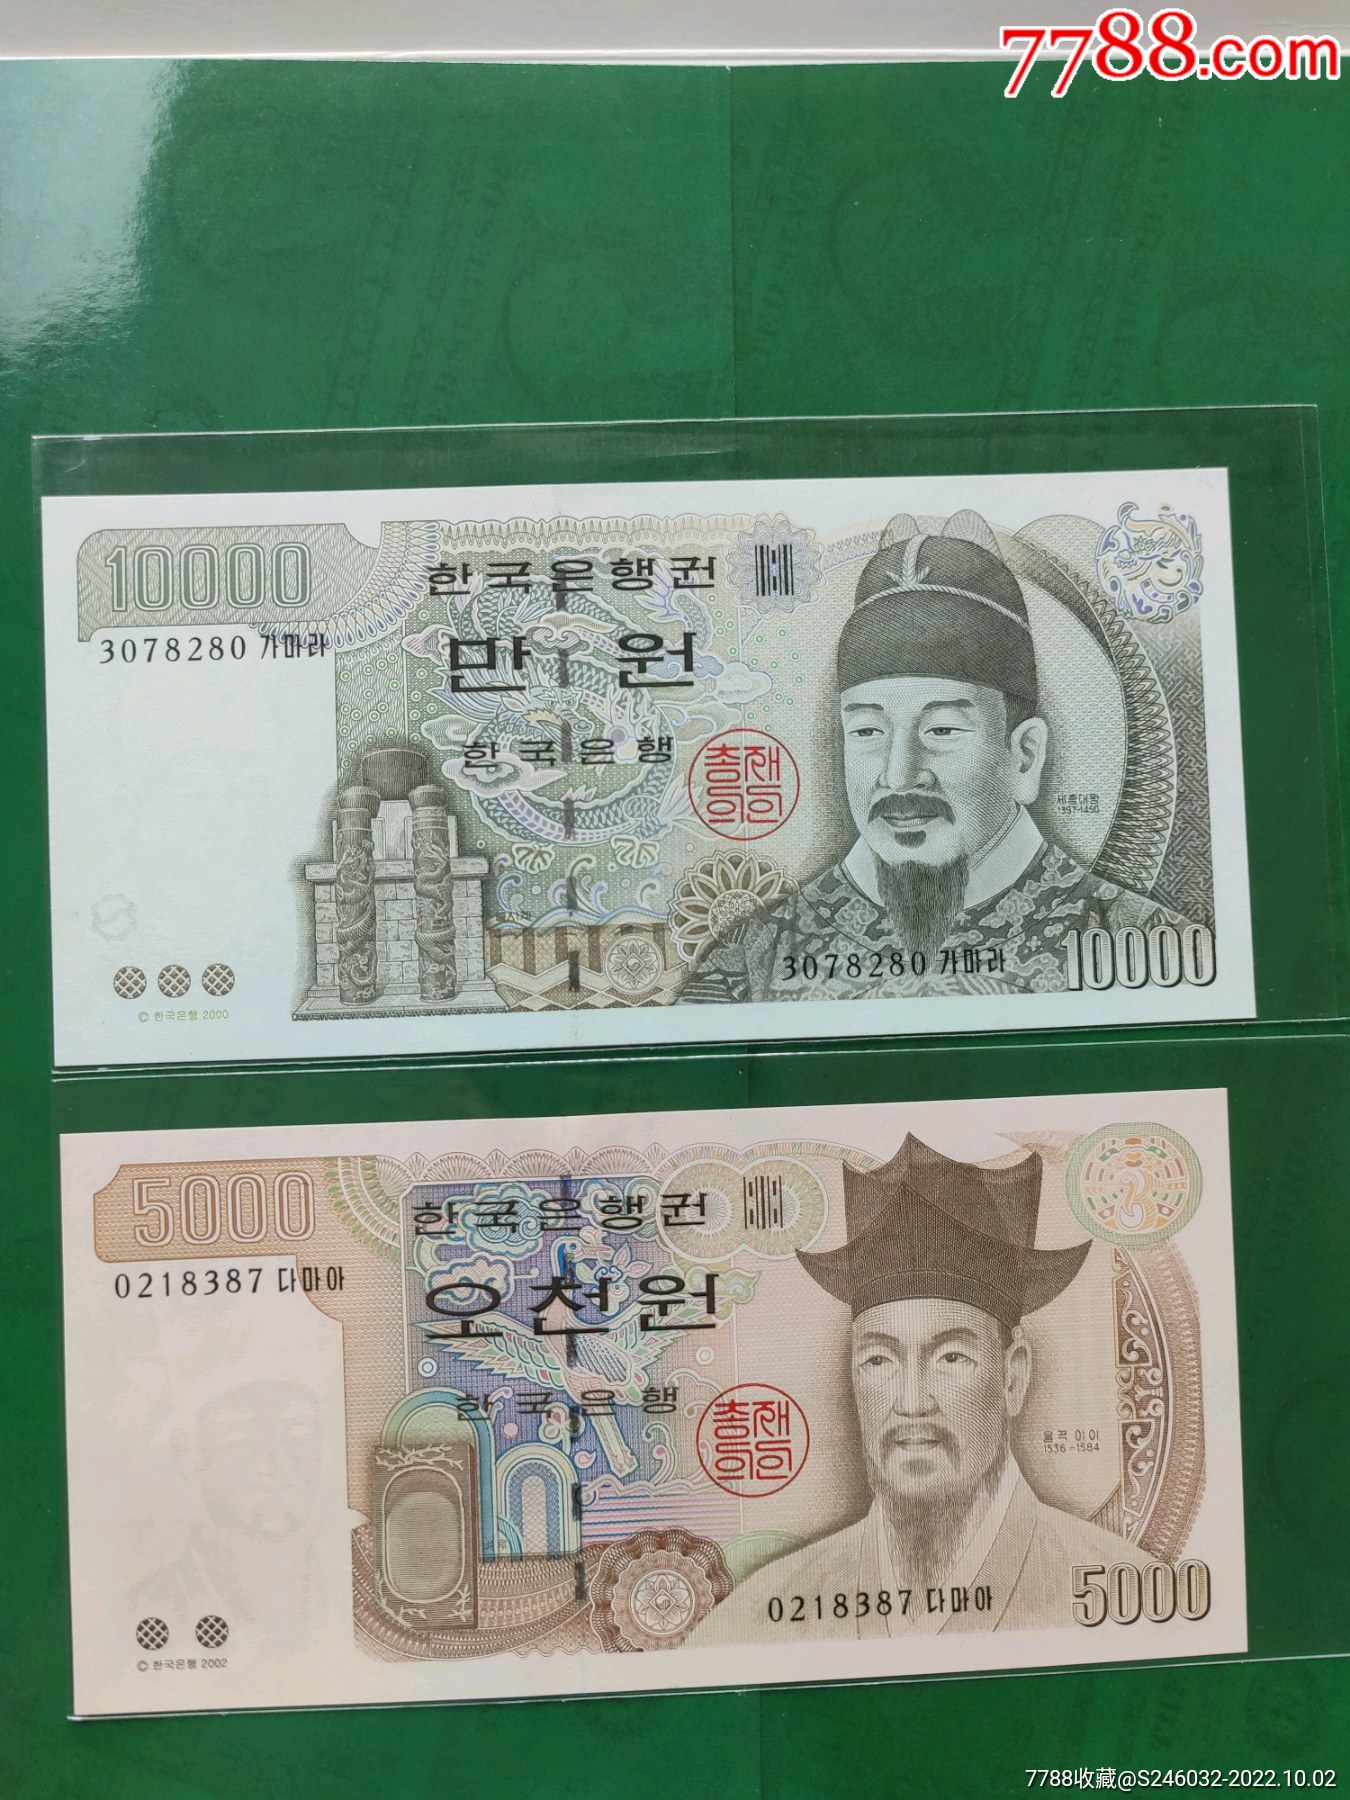 朝鲜1000元纸币图片-图库-五毛网